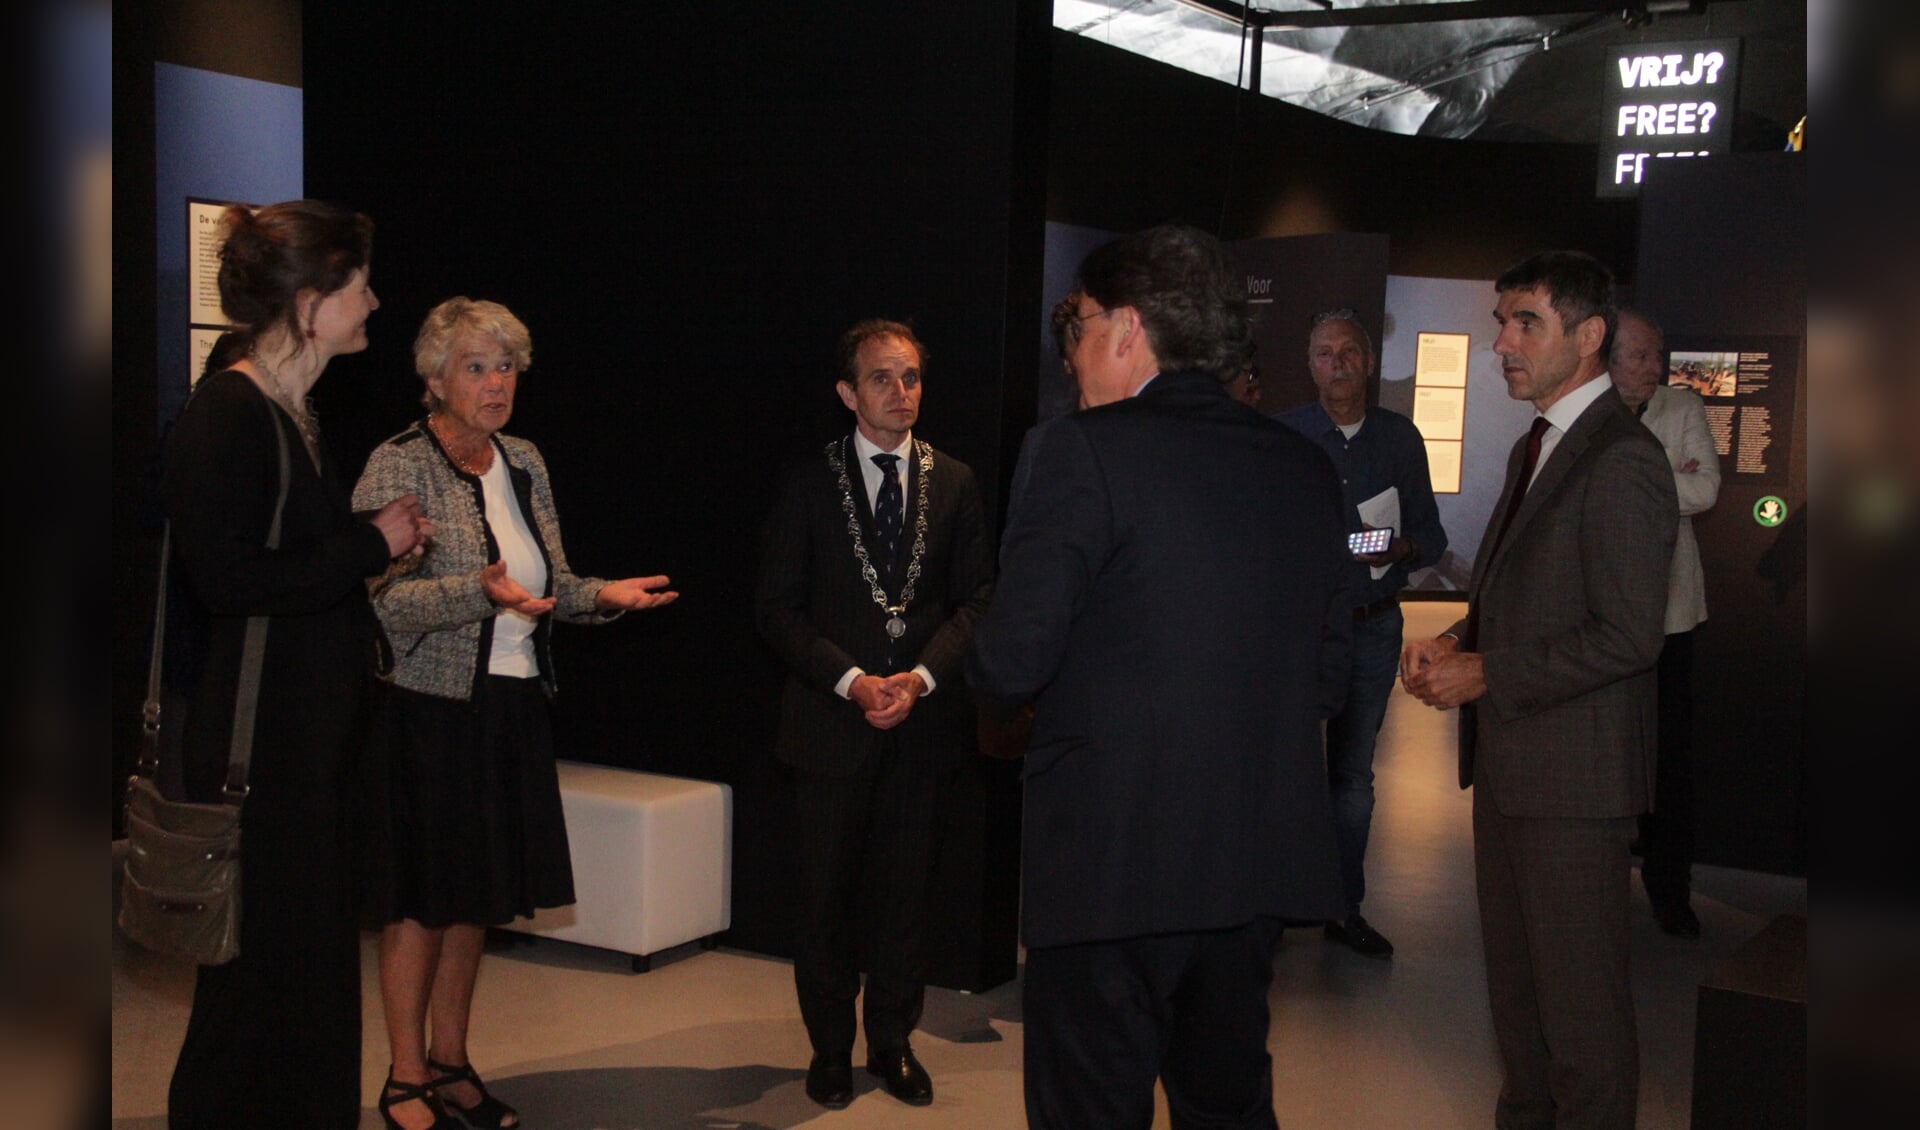 De staatssecretaris krijgt een rondleiding door Wiel Lenders directeur van het Vrijheidssmuseum. (foto: Peter Hendriks)